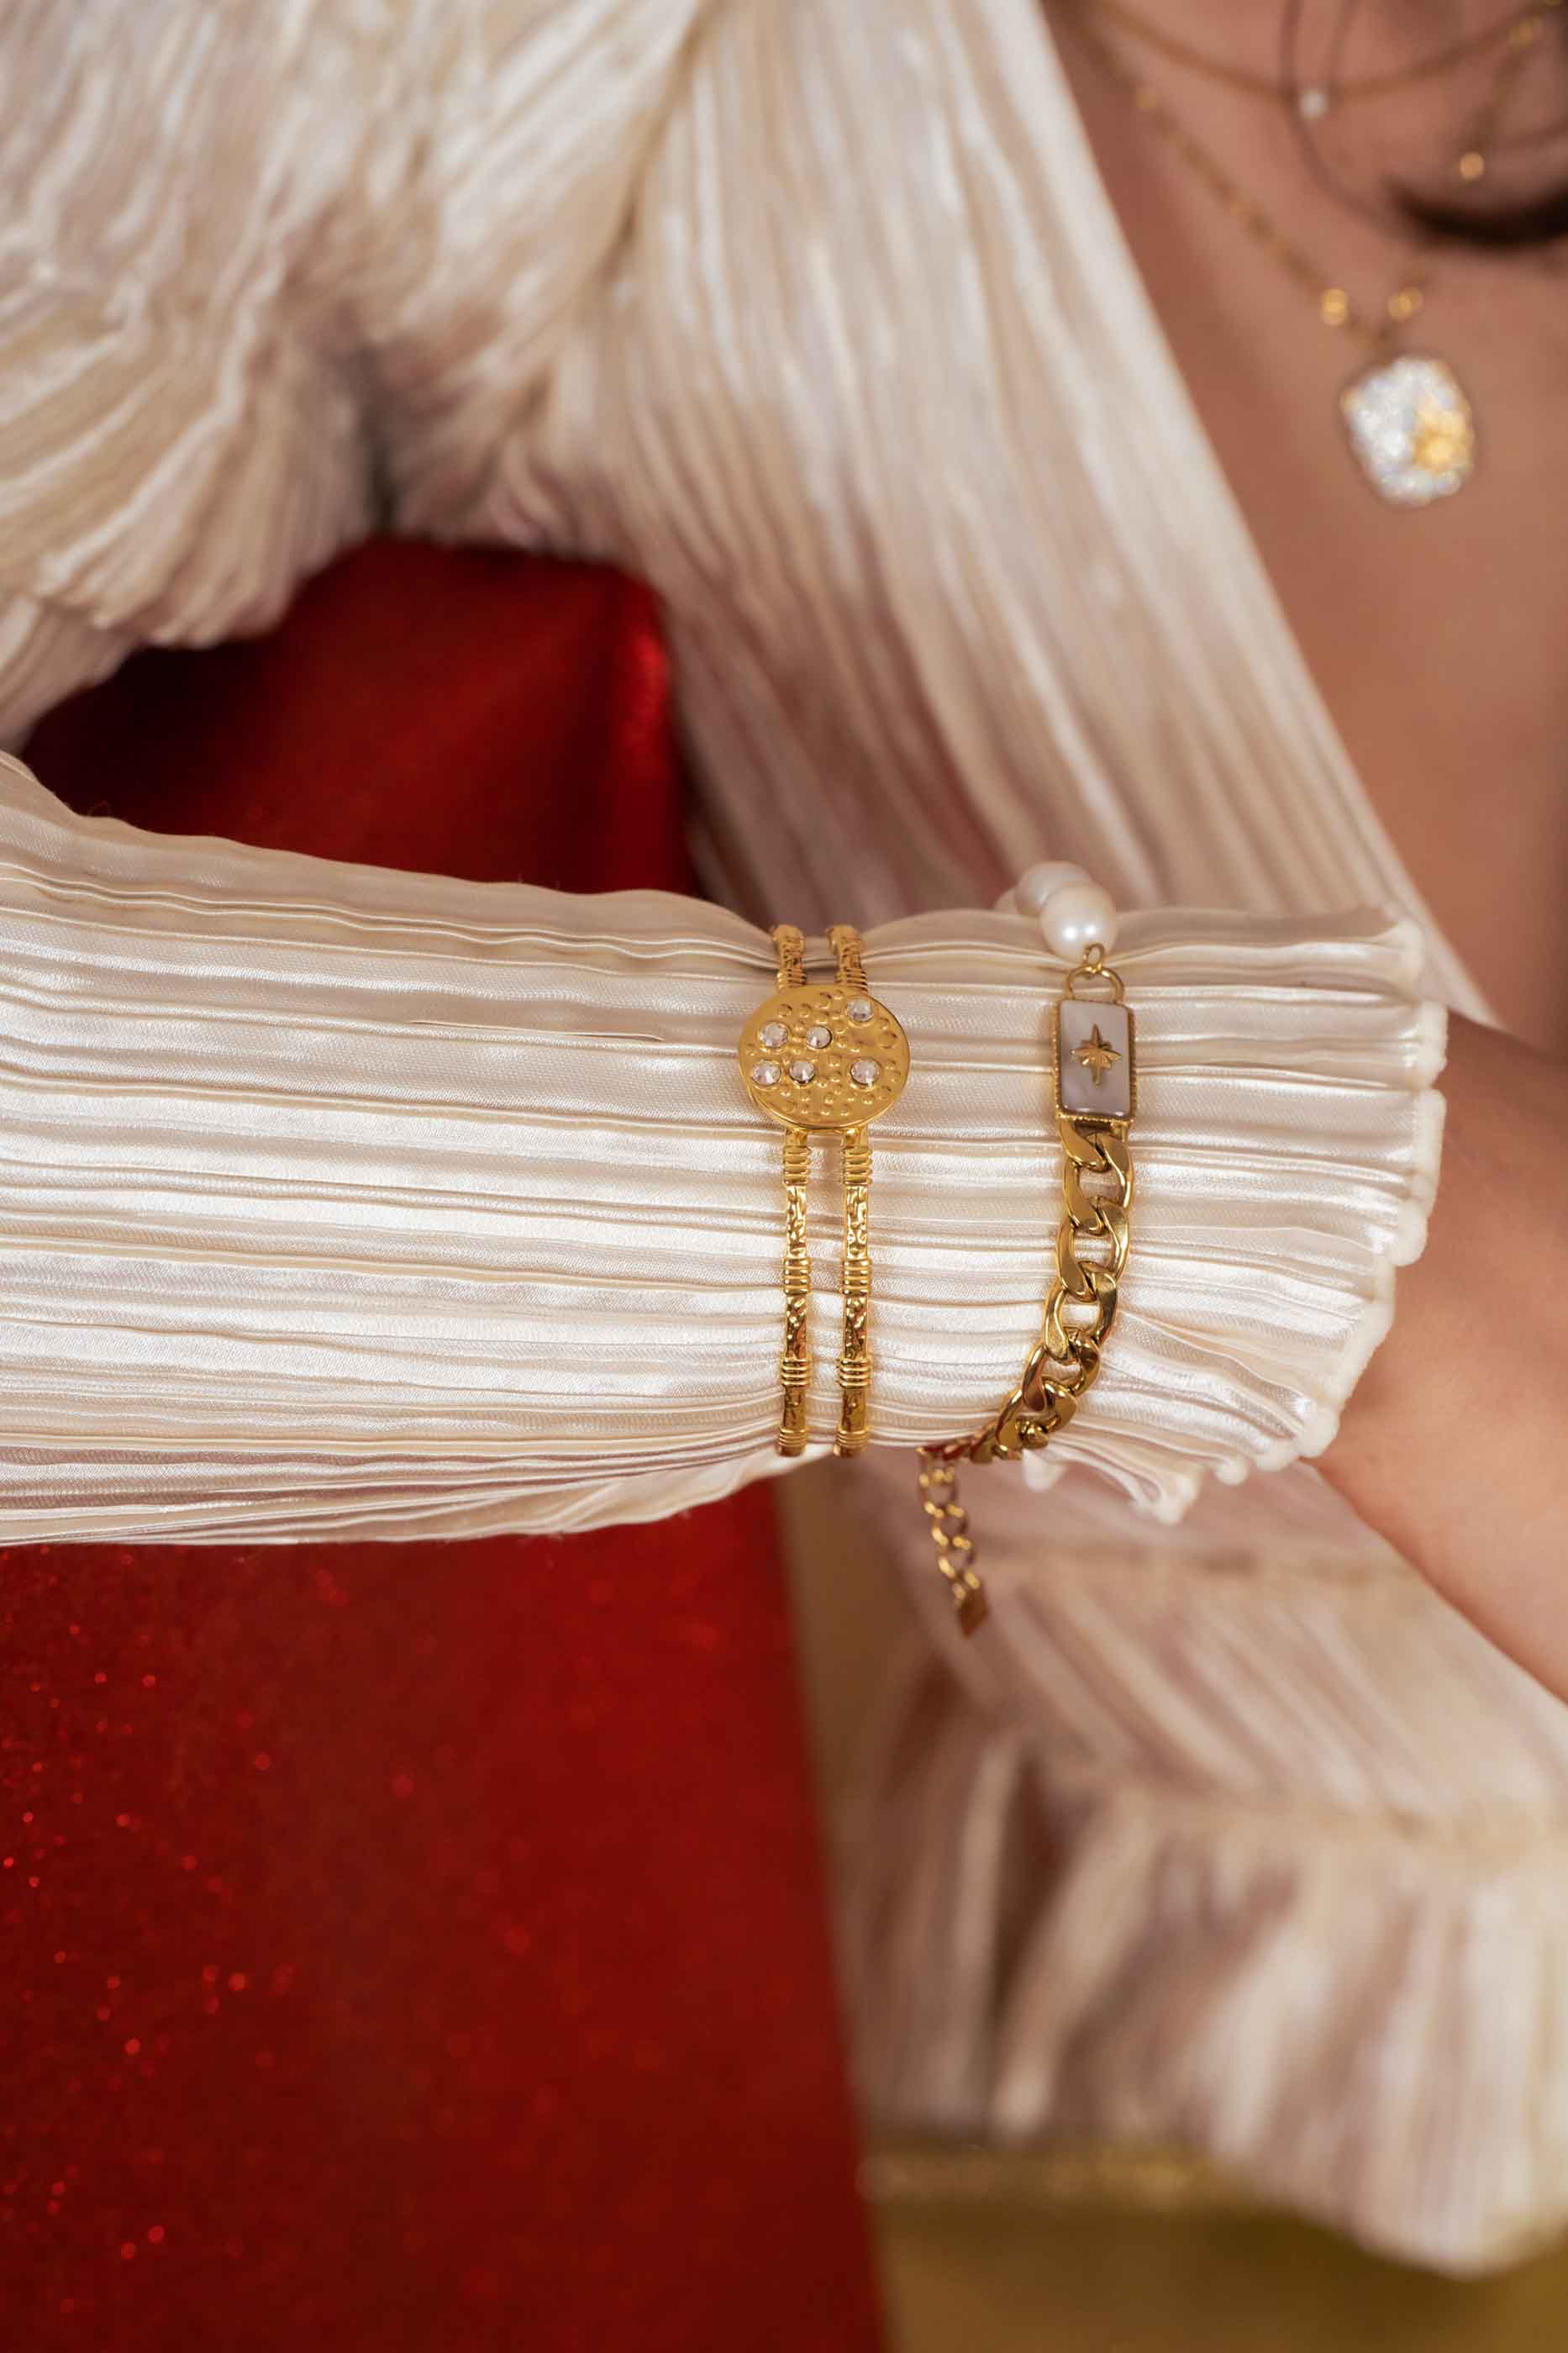 Bracelet Alicianne - Perles Bracelet Bohm Paris 